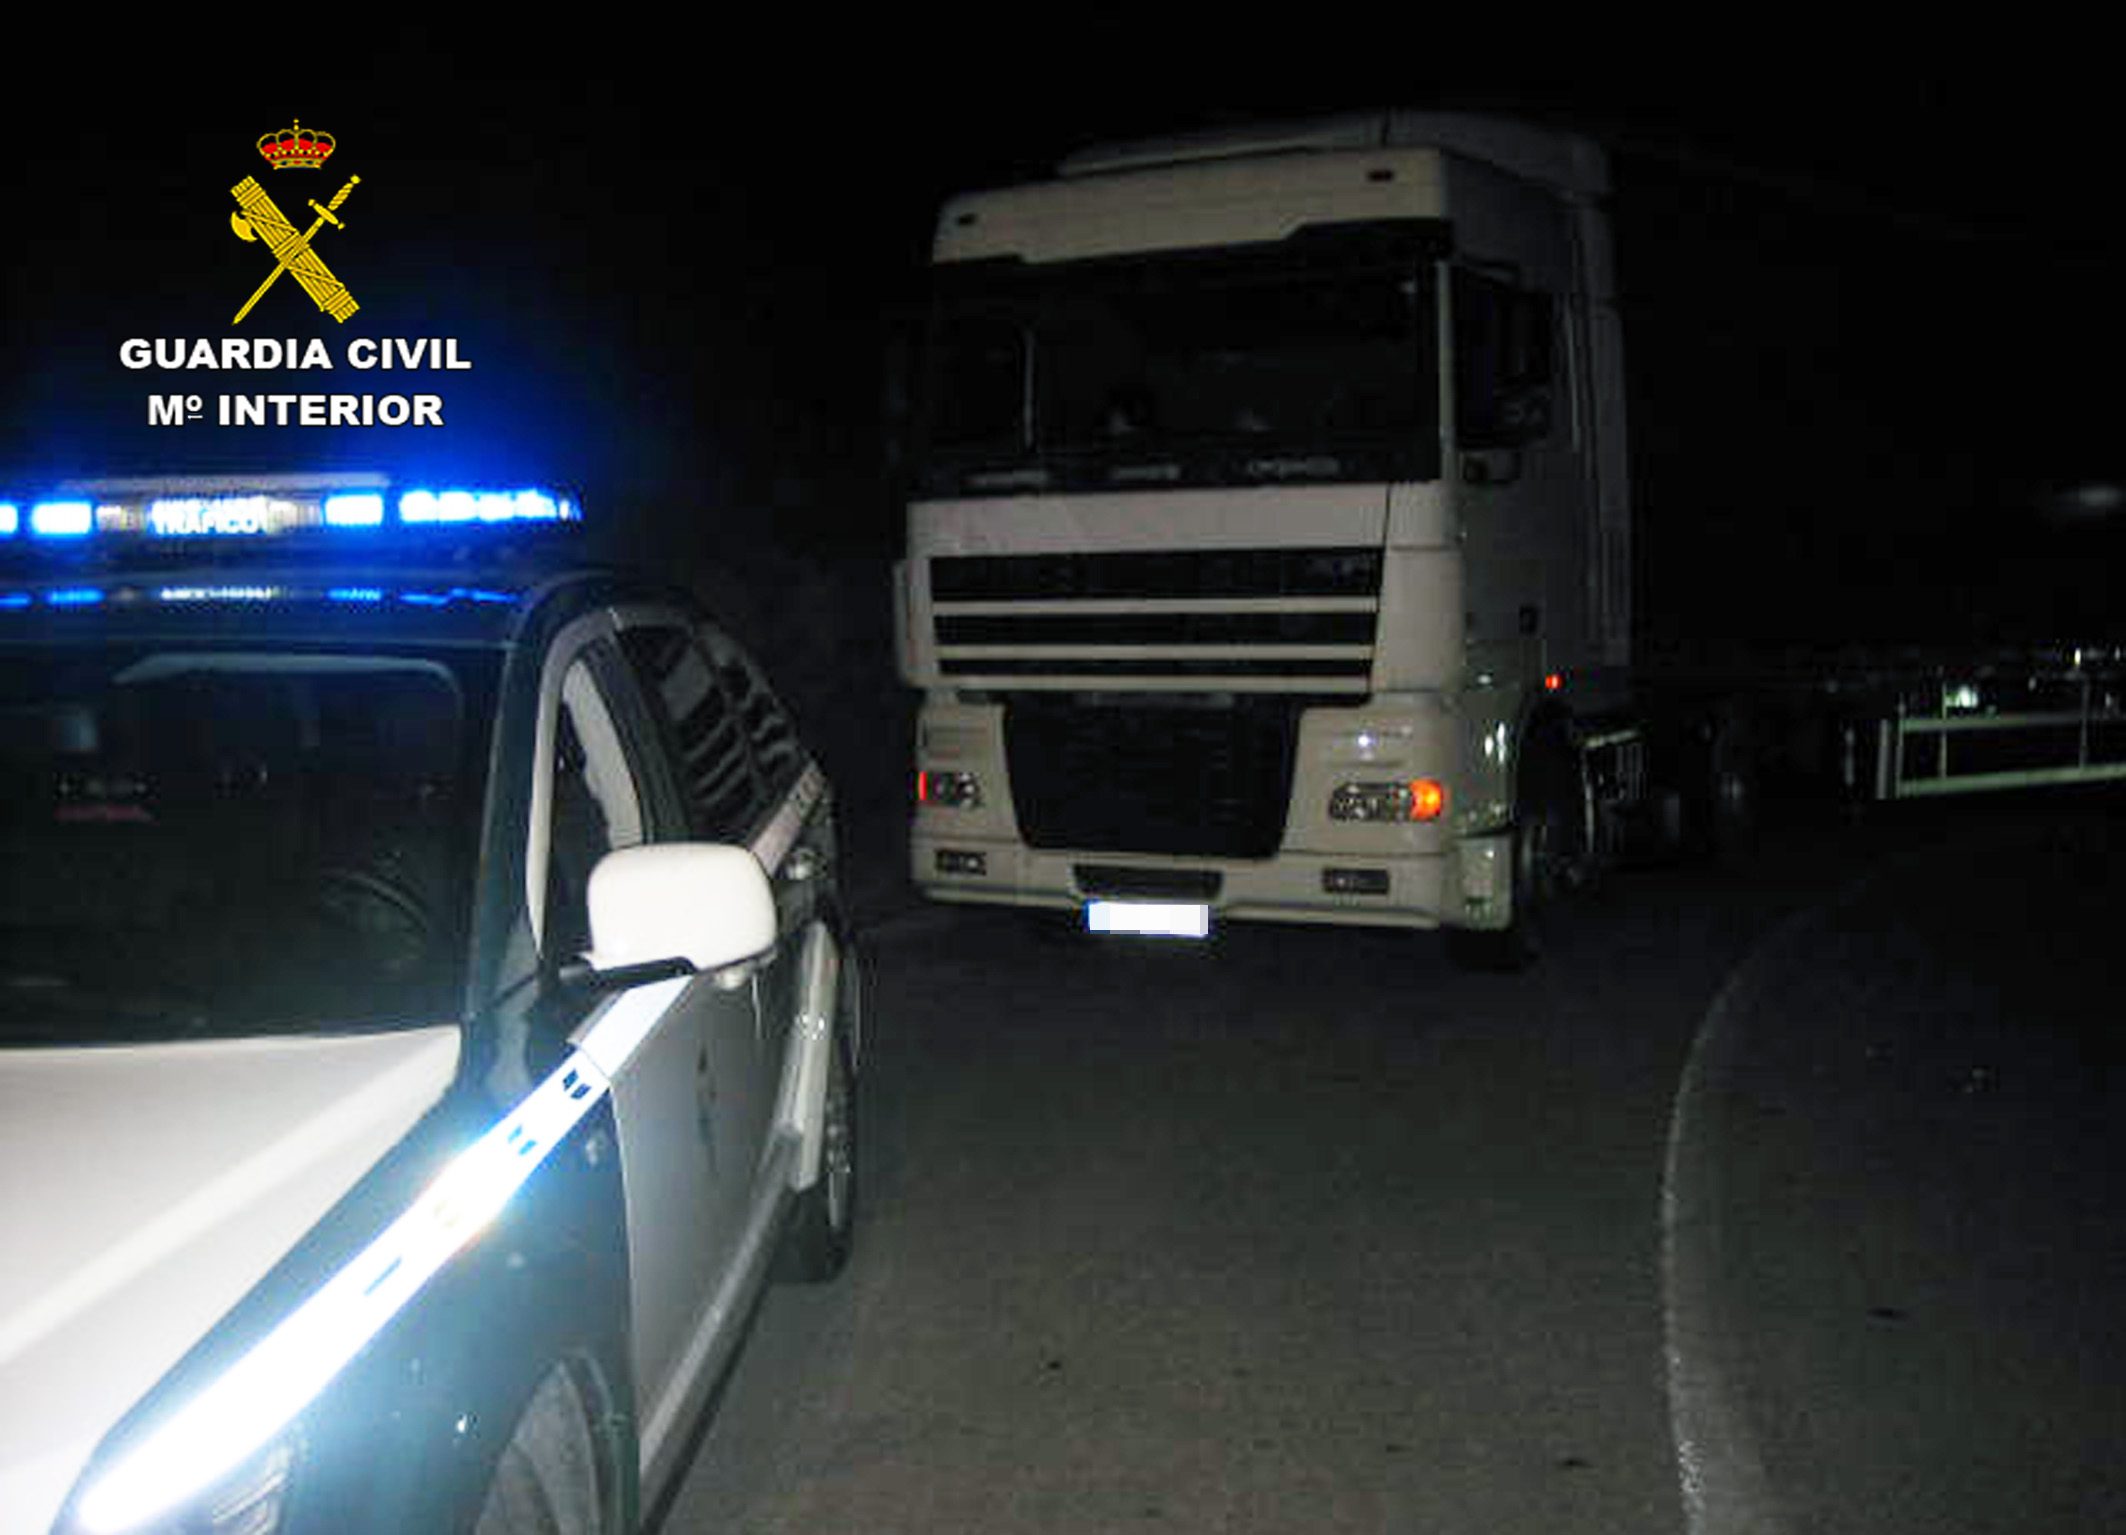 La Guardia Civil interceptó a un camionero en Jumilla que conducía bajo los efectos de drogas